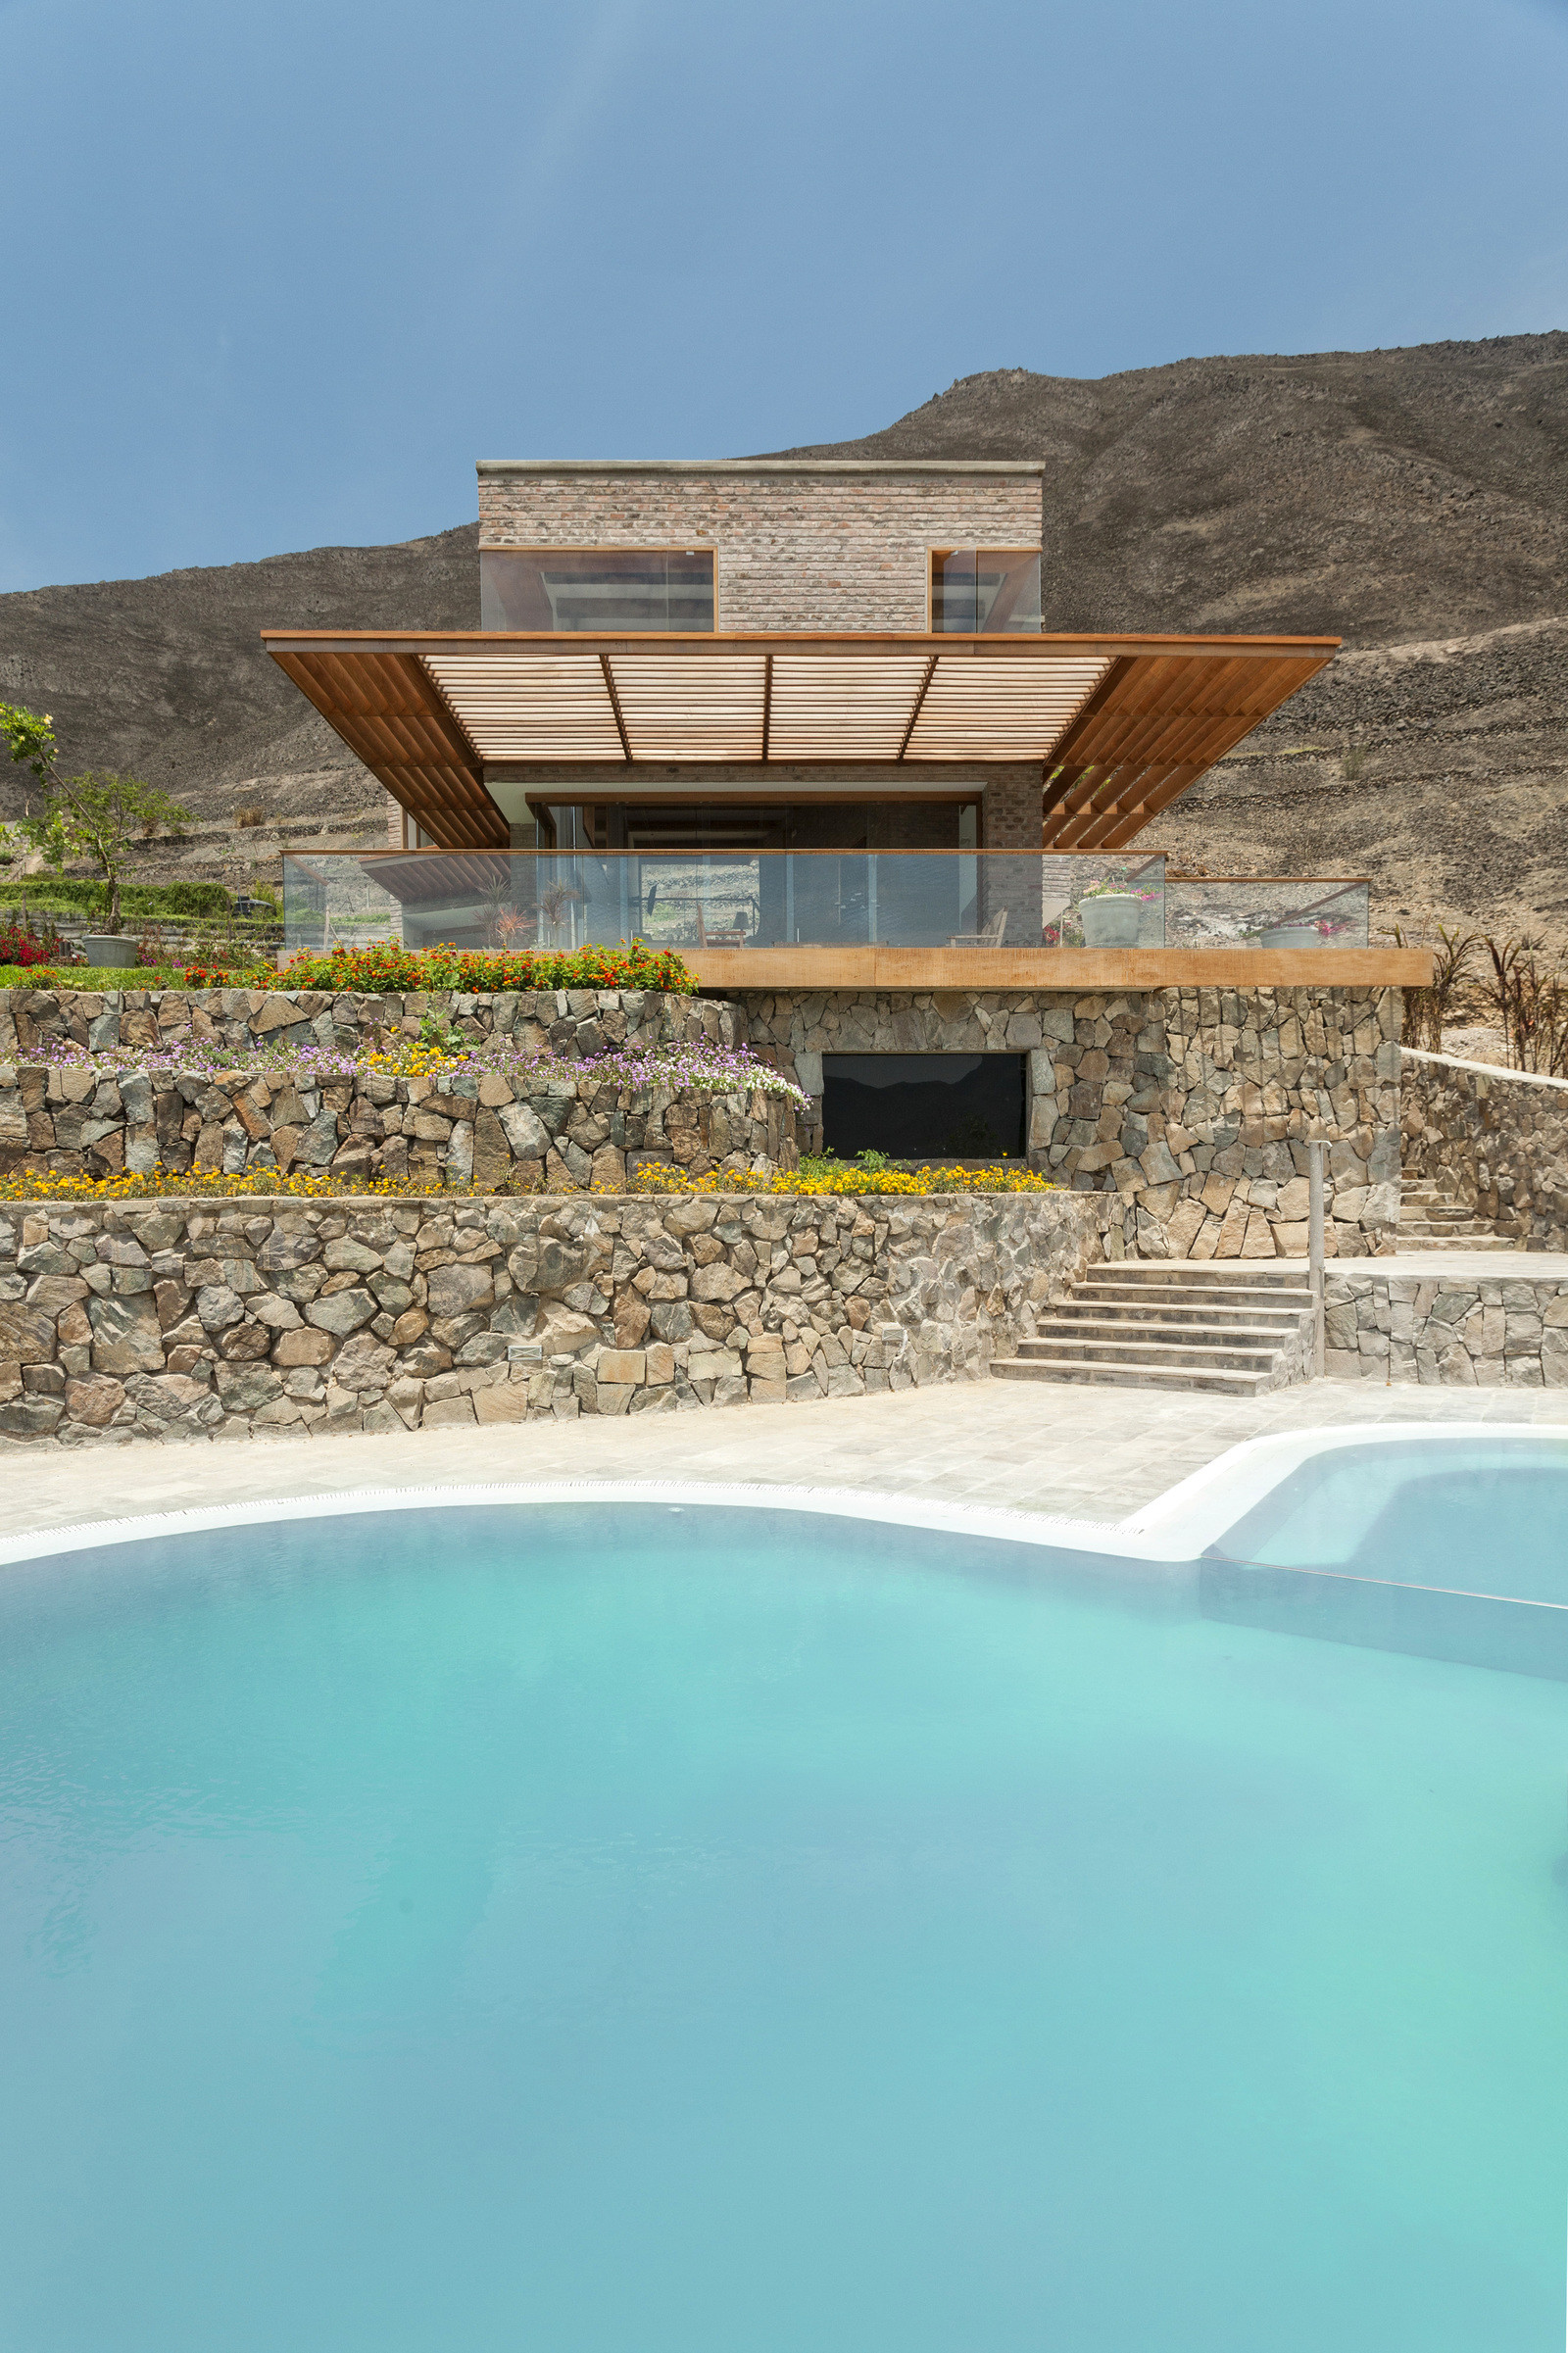 House in Peru